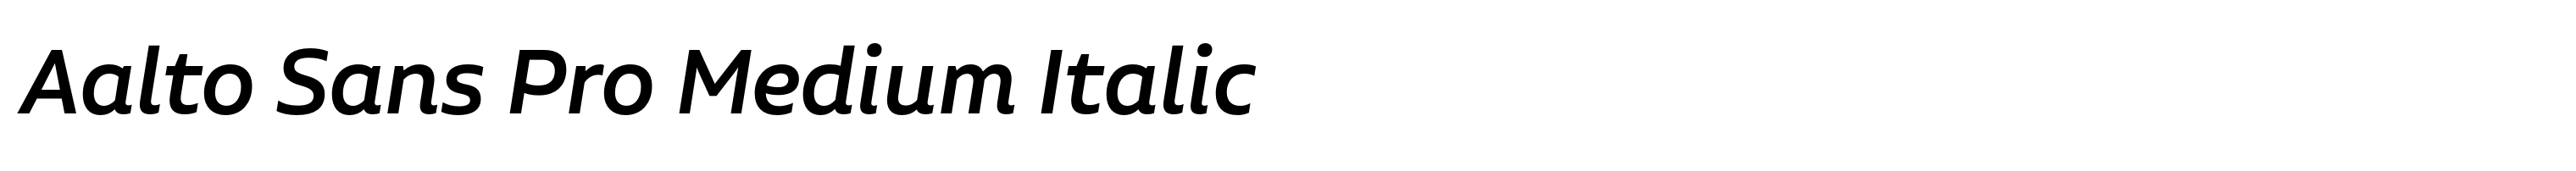 Aalto Sans Pro Medium Italic